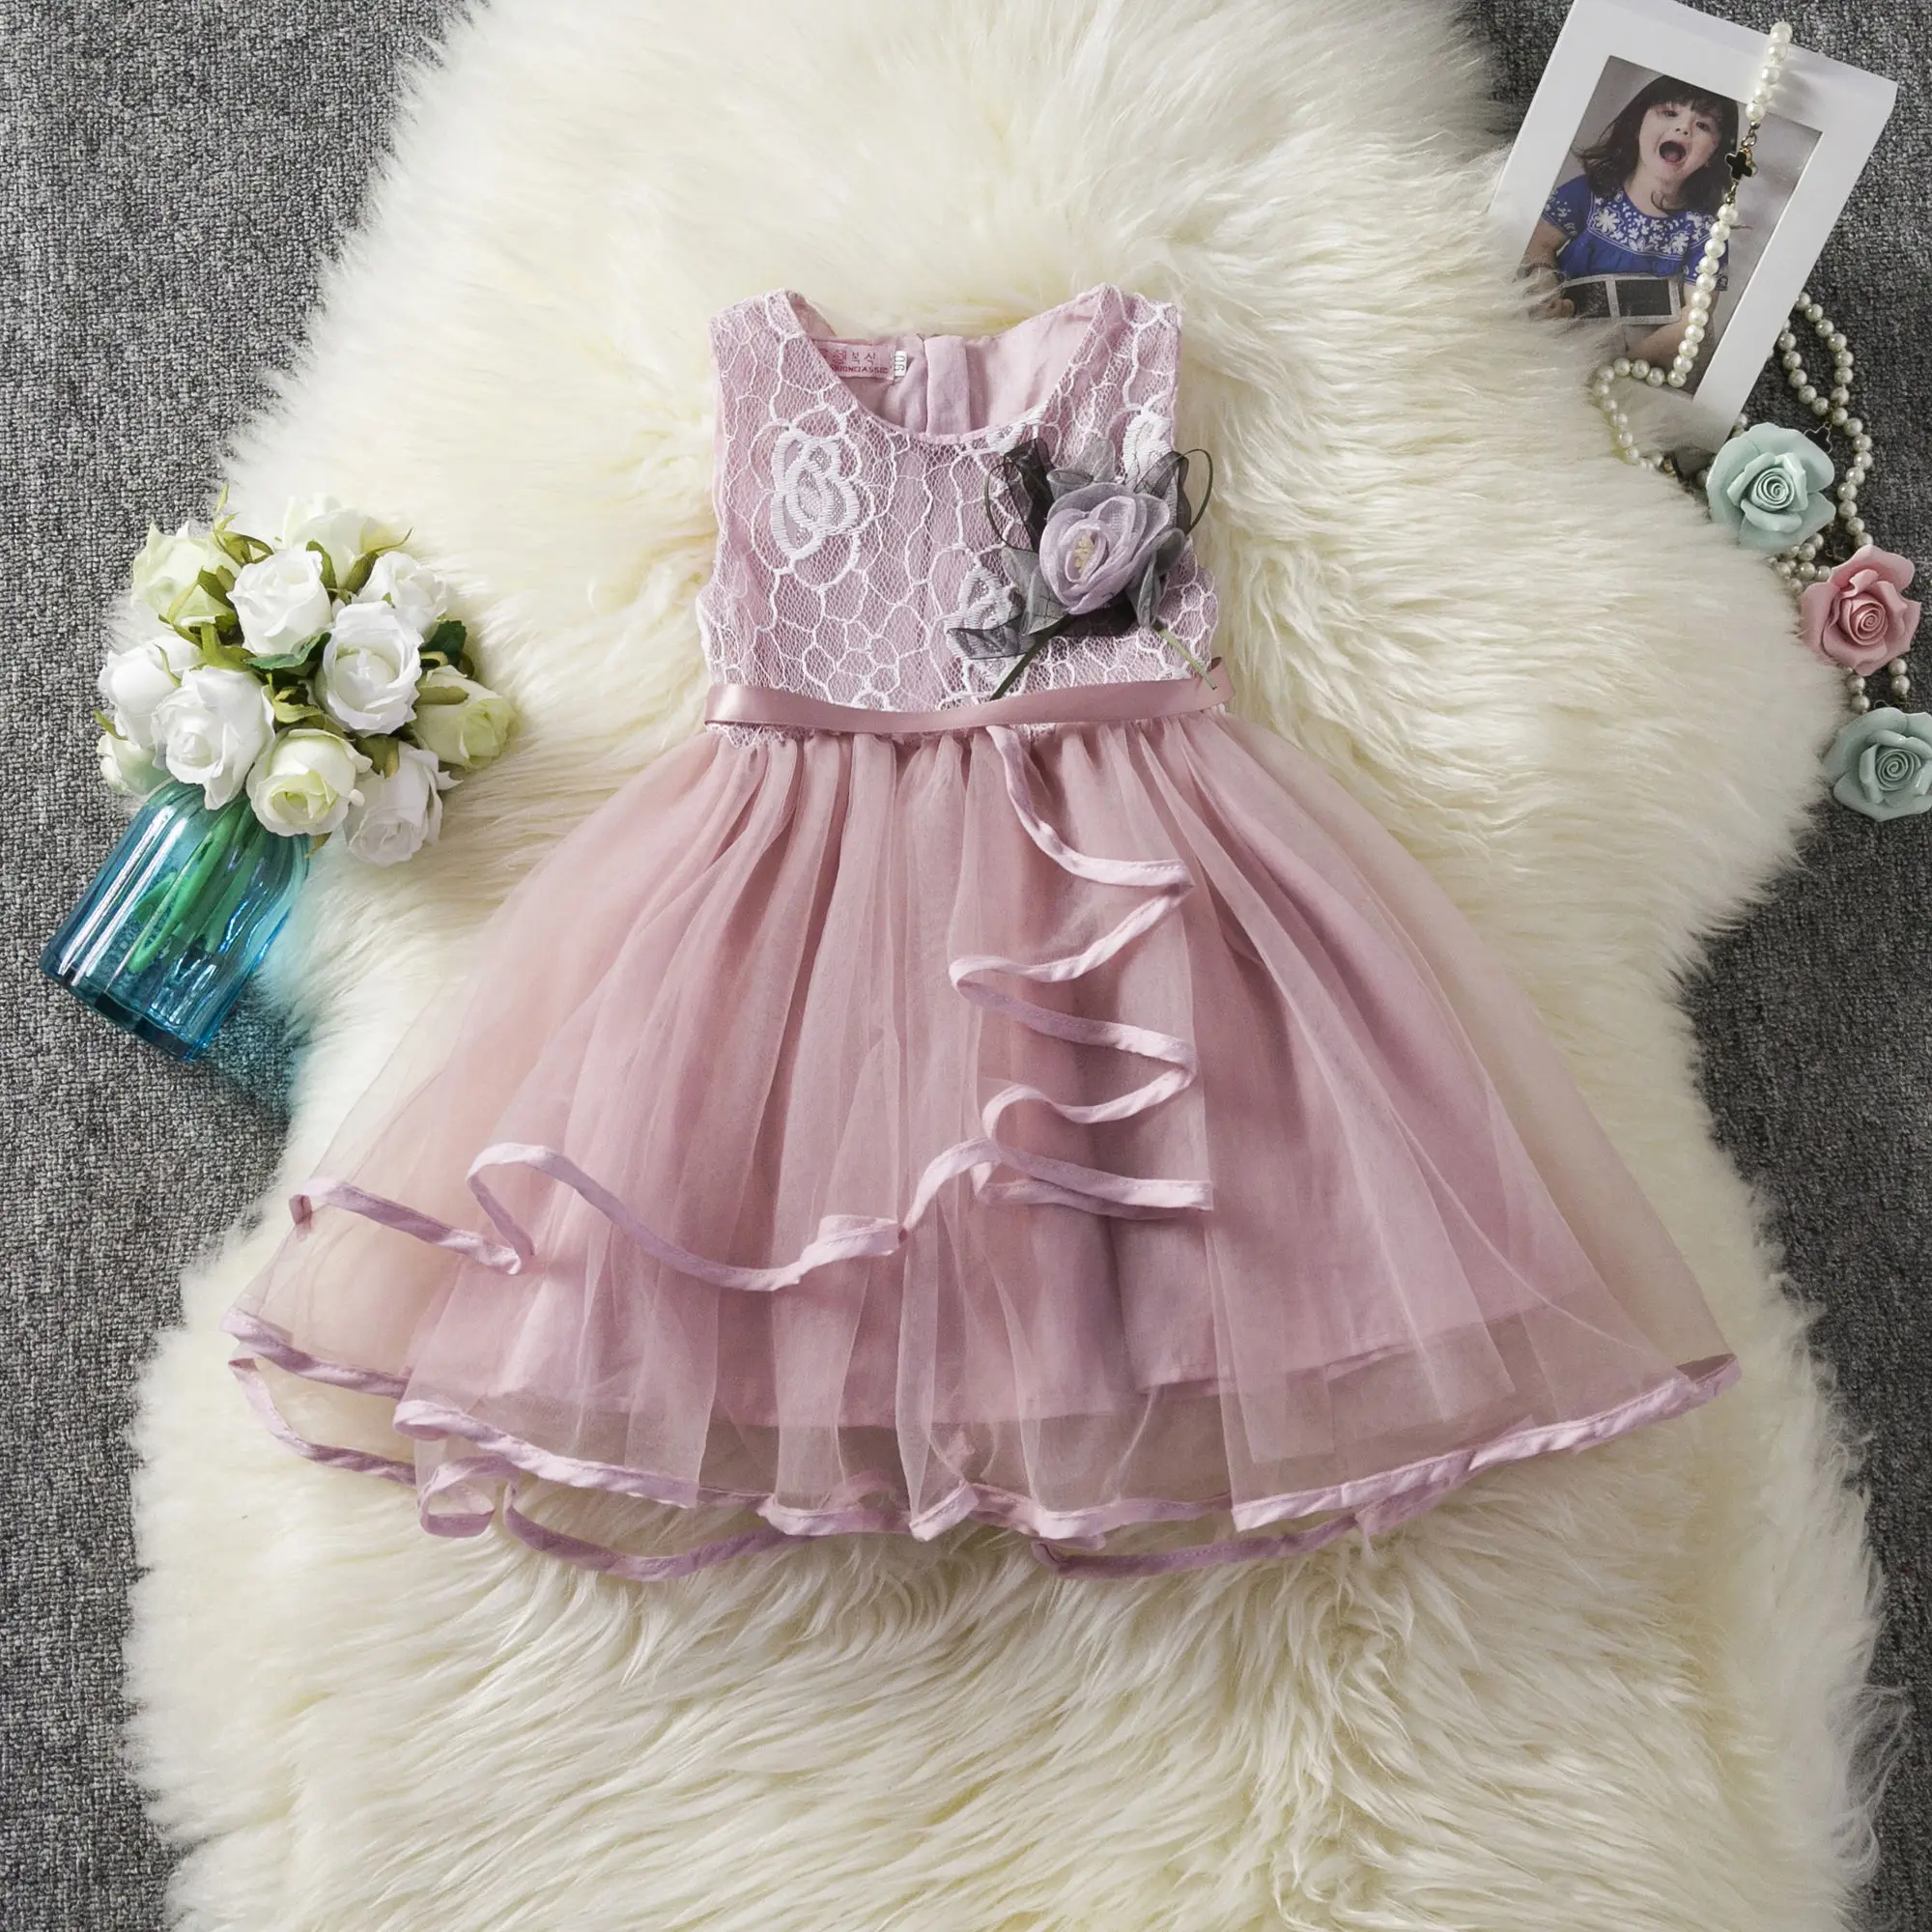 Kız dantel kısa etek, küçük kız parti kıyafetleri, 2, 3, 4 ve 6 yaş arası çocuklar için prenses kıyafetleri Görüntü 4